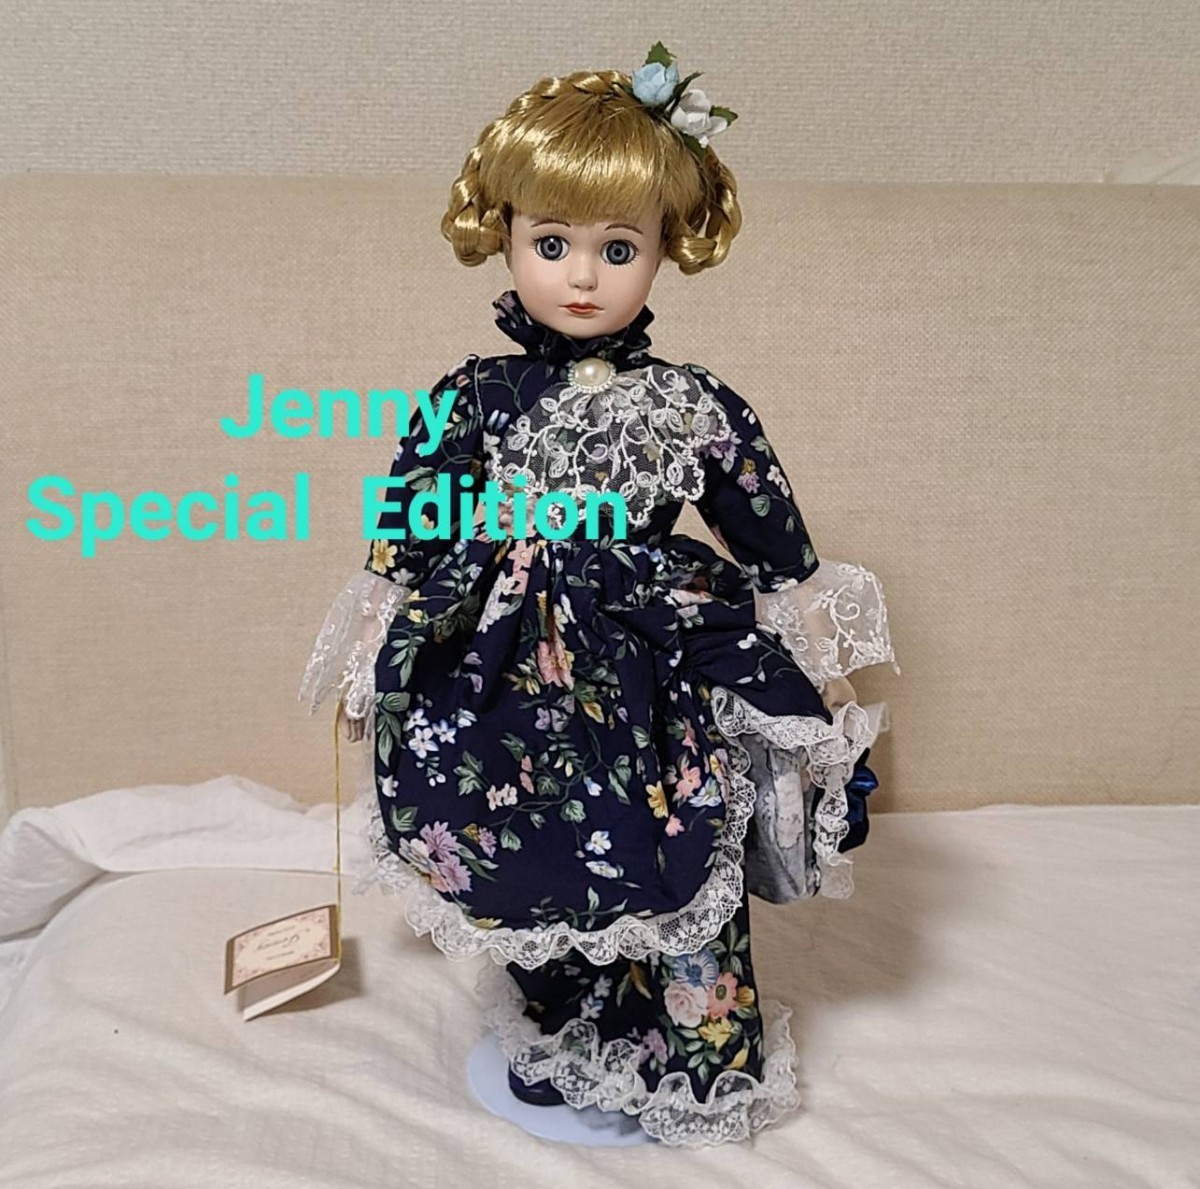 Jenny Special  Edition ジェニースペシャルエディション